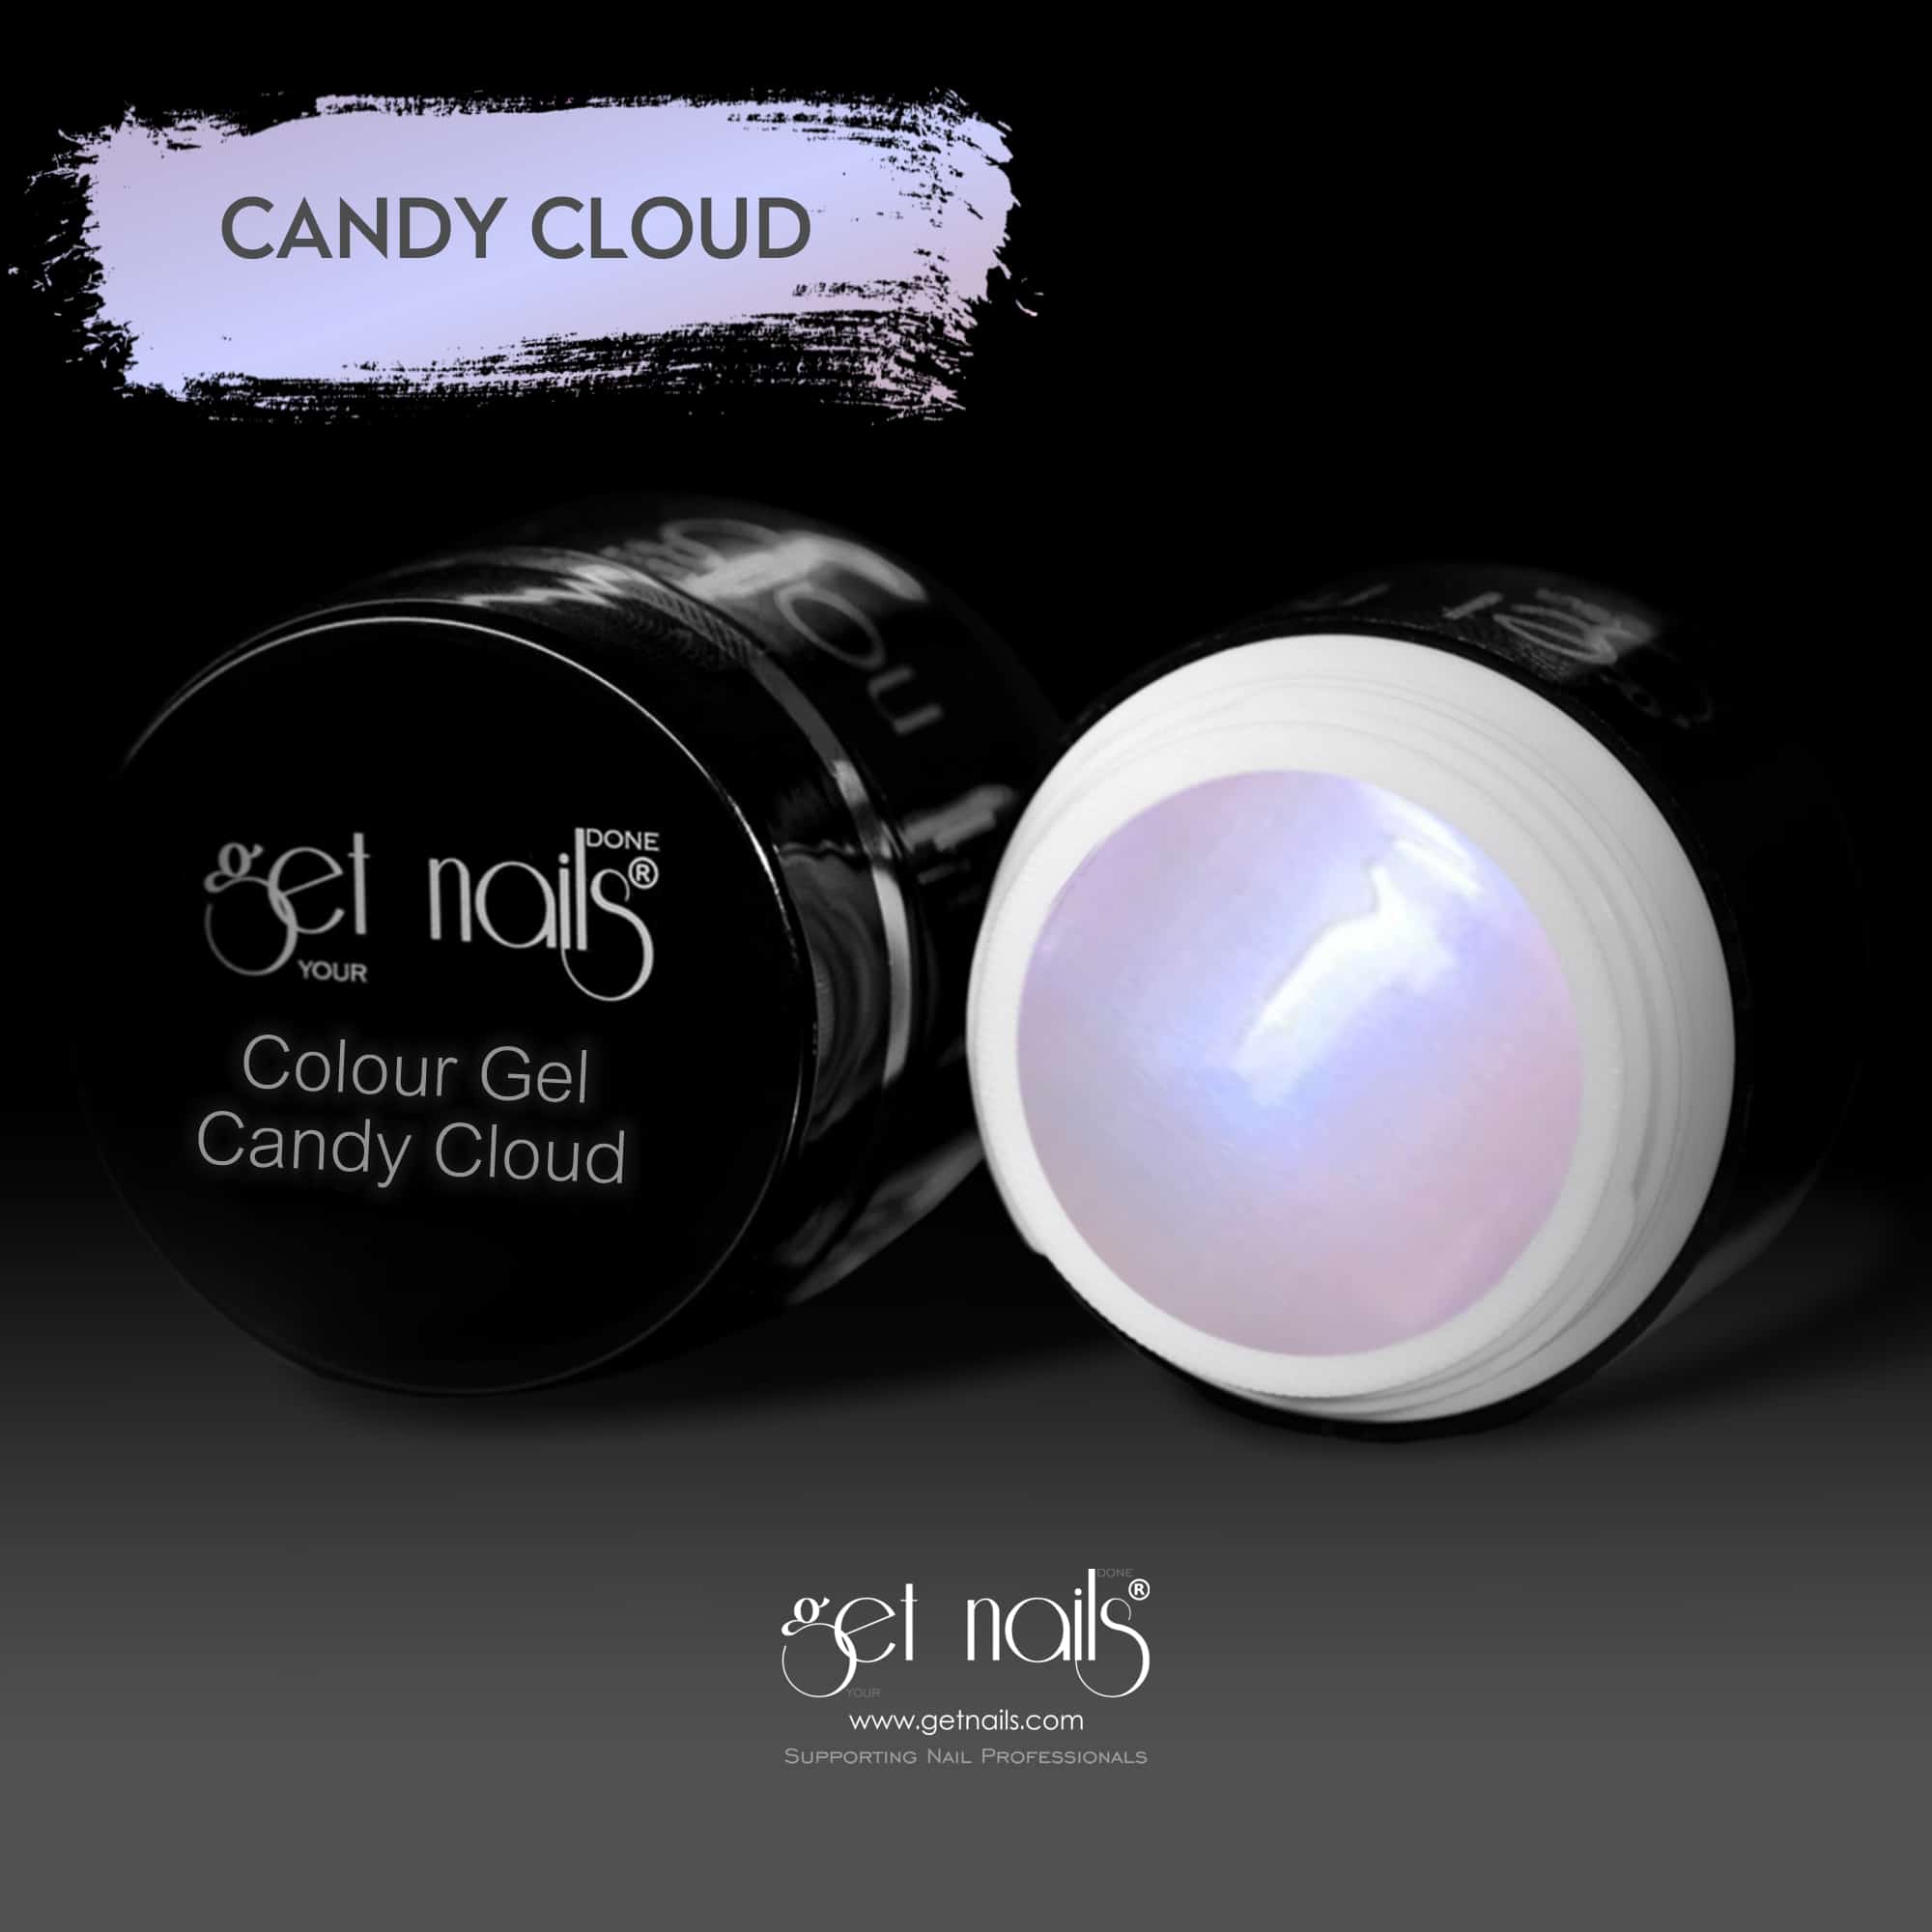 Get Nails Austria - Colour Gel Candy Cloud 5g